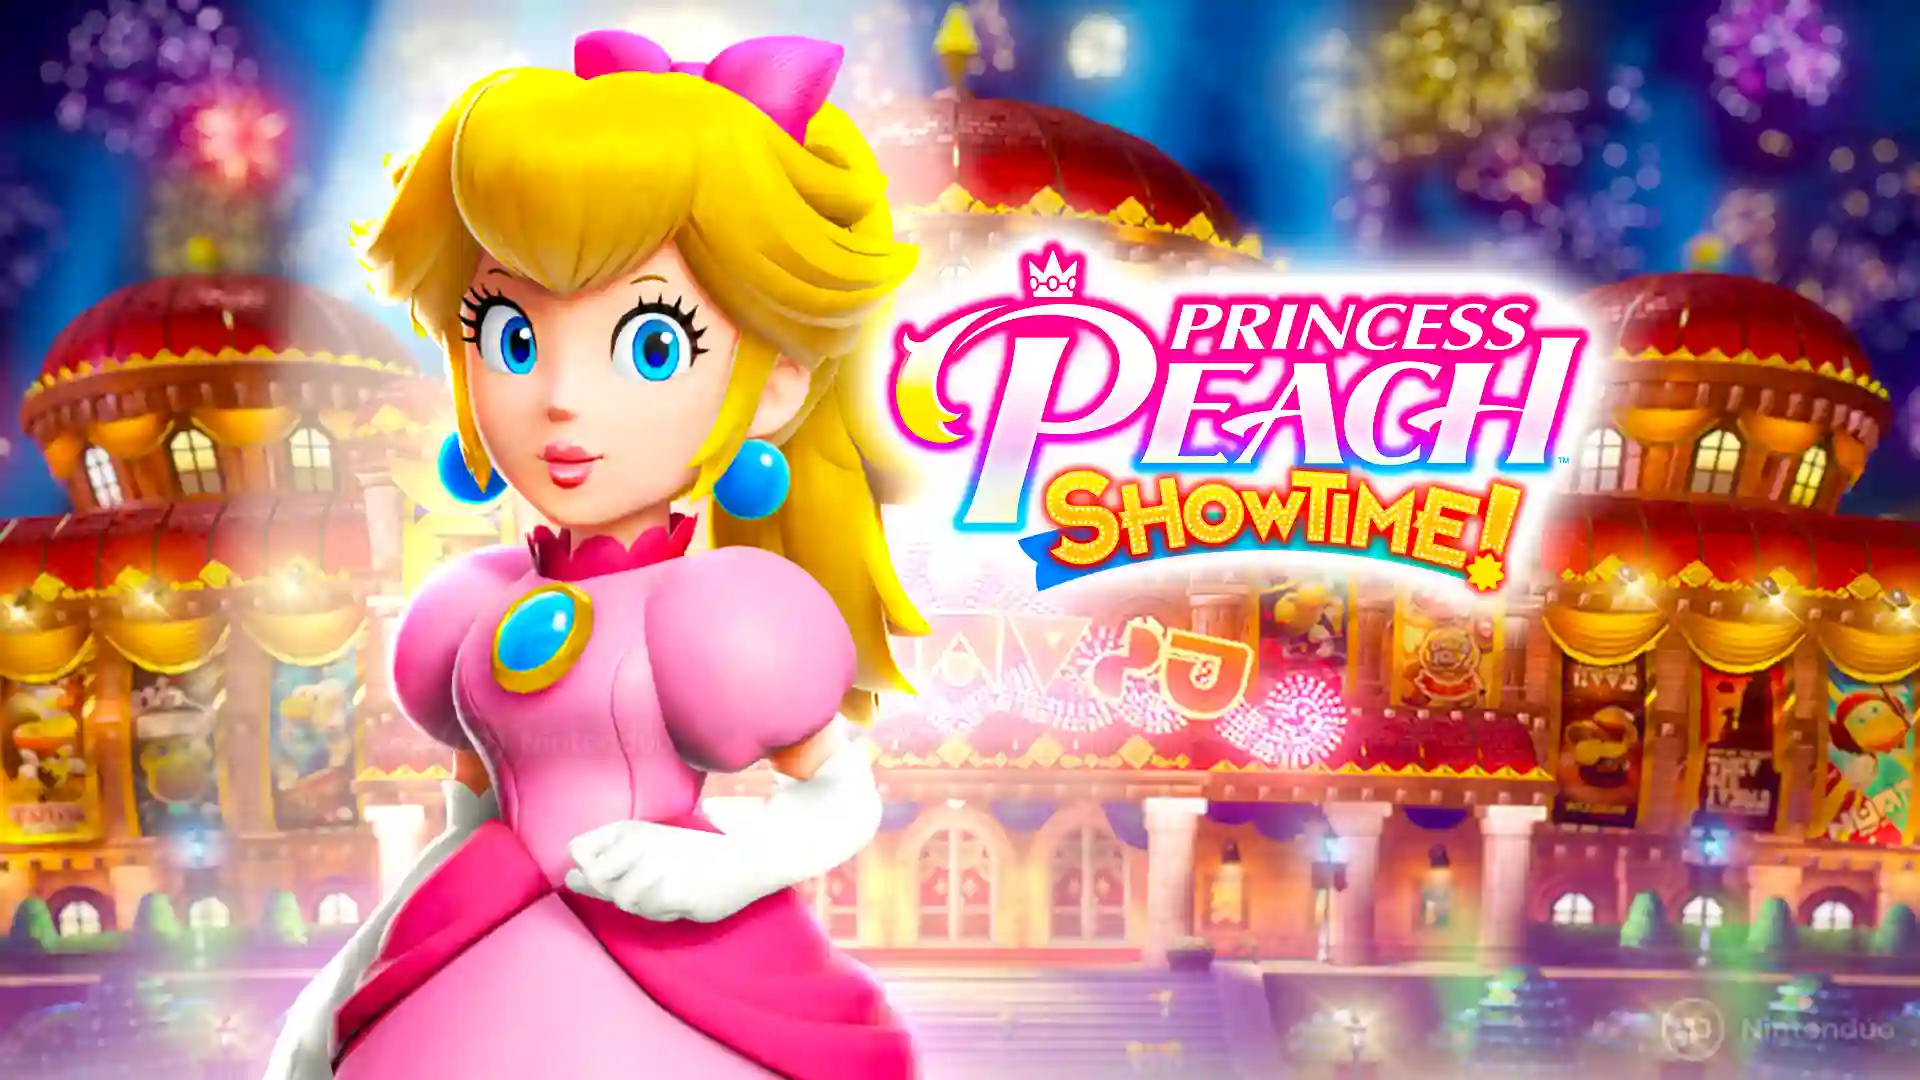 Princess Peach Showtime！